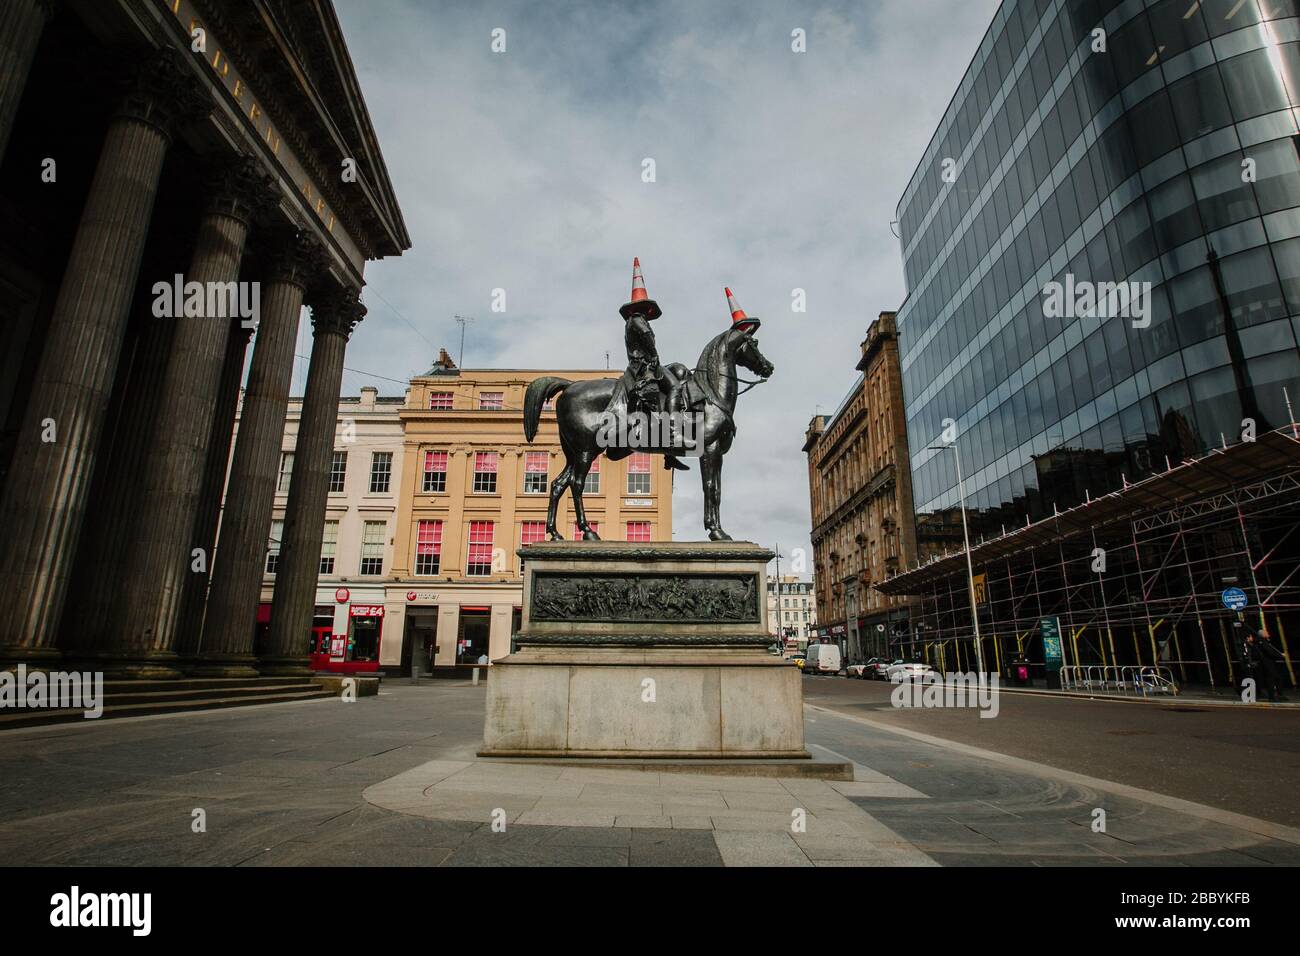 Statue du duc de Wellington à l'extérieur de la Galerie d'art moderne, Glasgow, pendant l'écluse du virus Corona, lorsque les rues de la ville sont très calmes. Banque D'Images